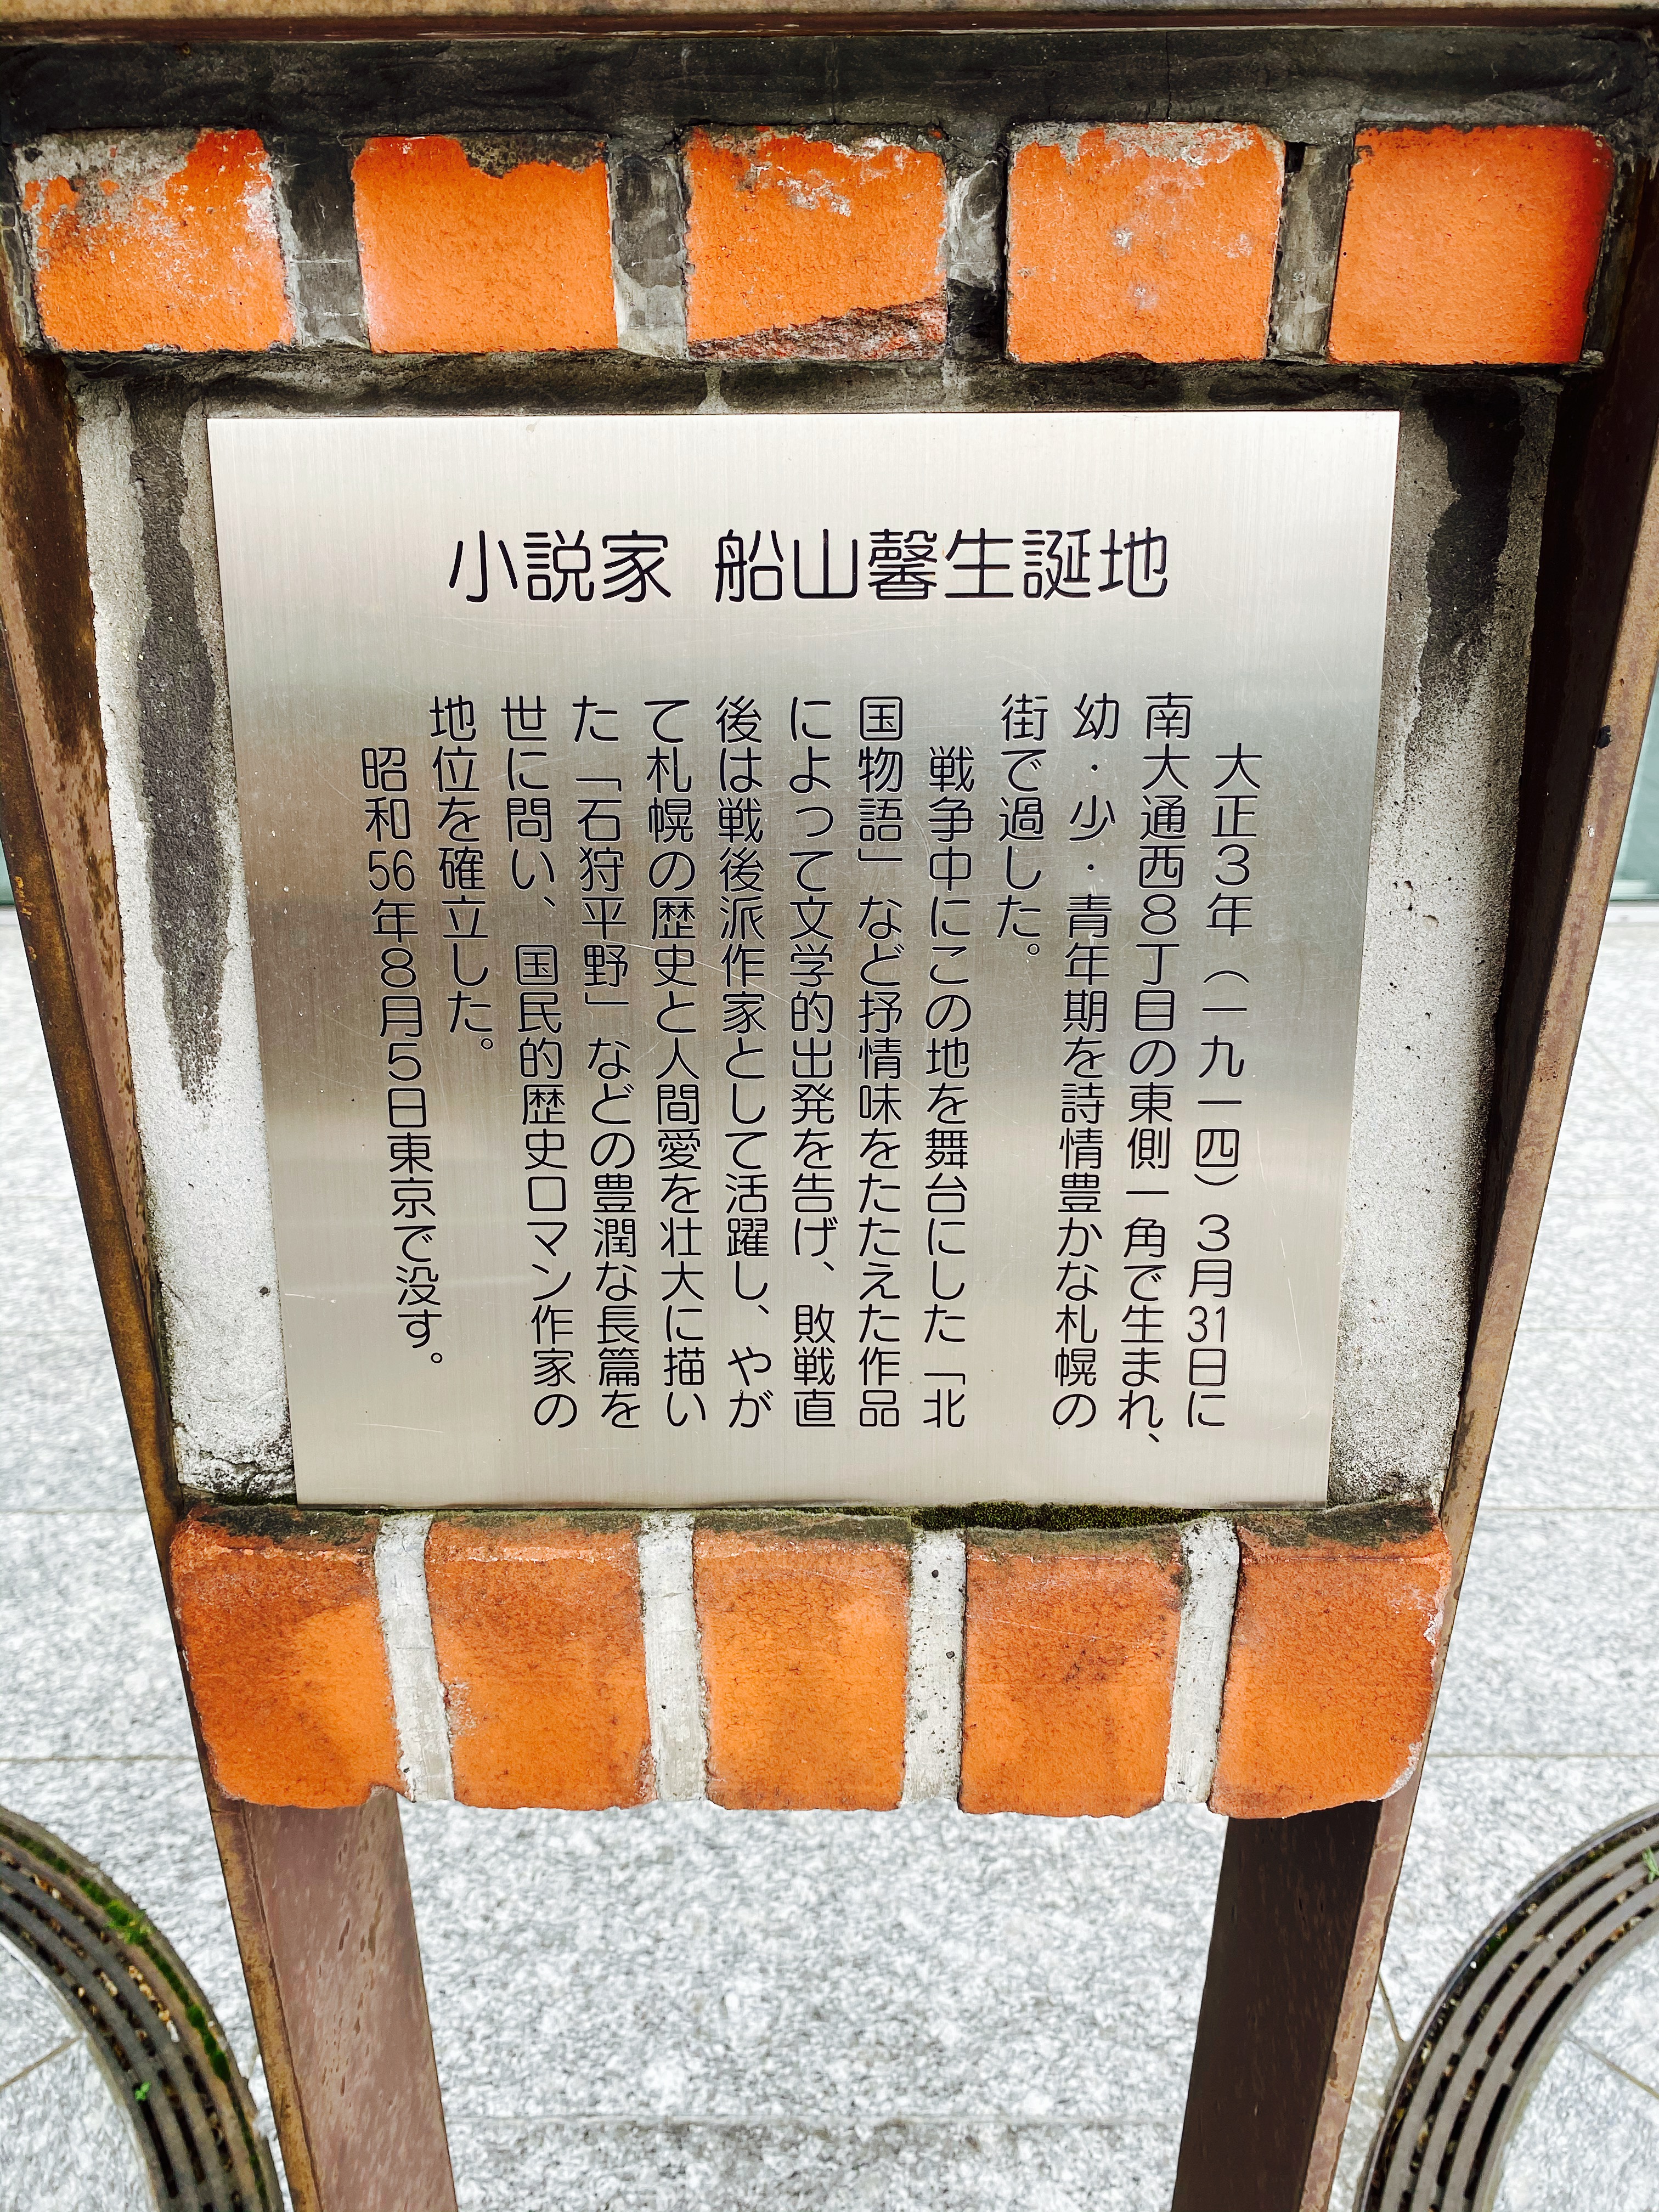 小説家・船山馨の生誕地の説明板